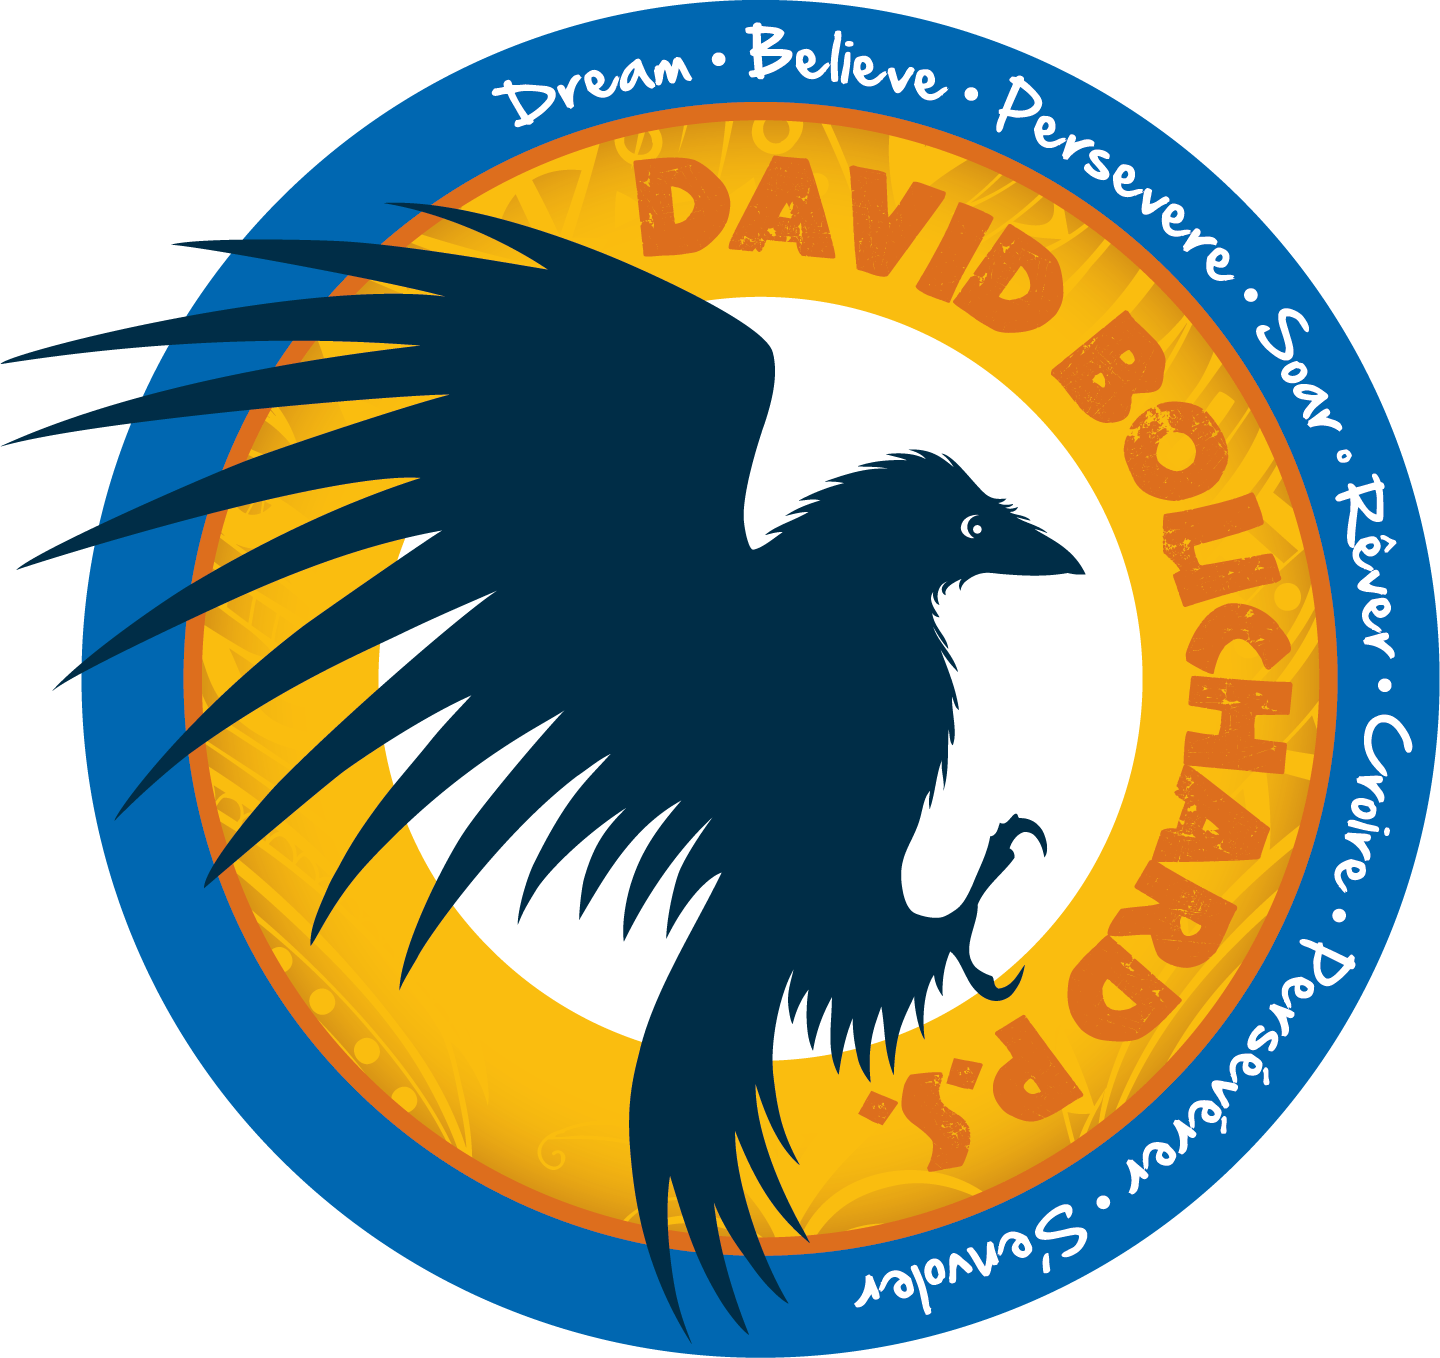 David Bouchard Public School logo